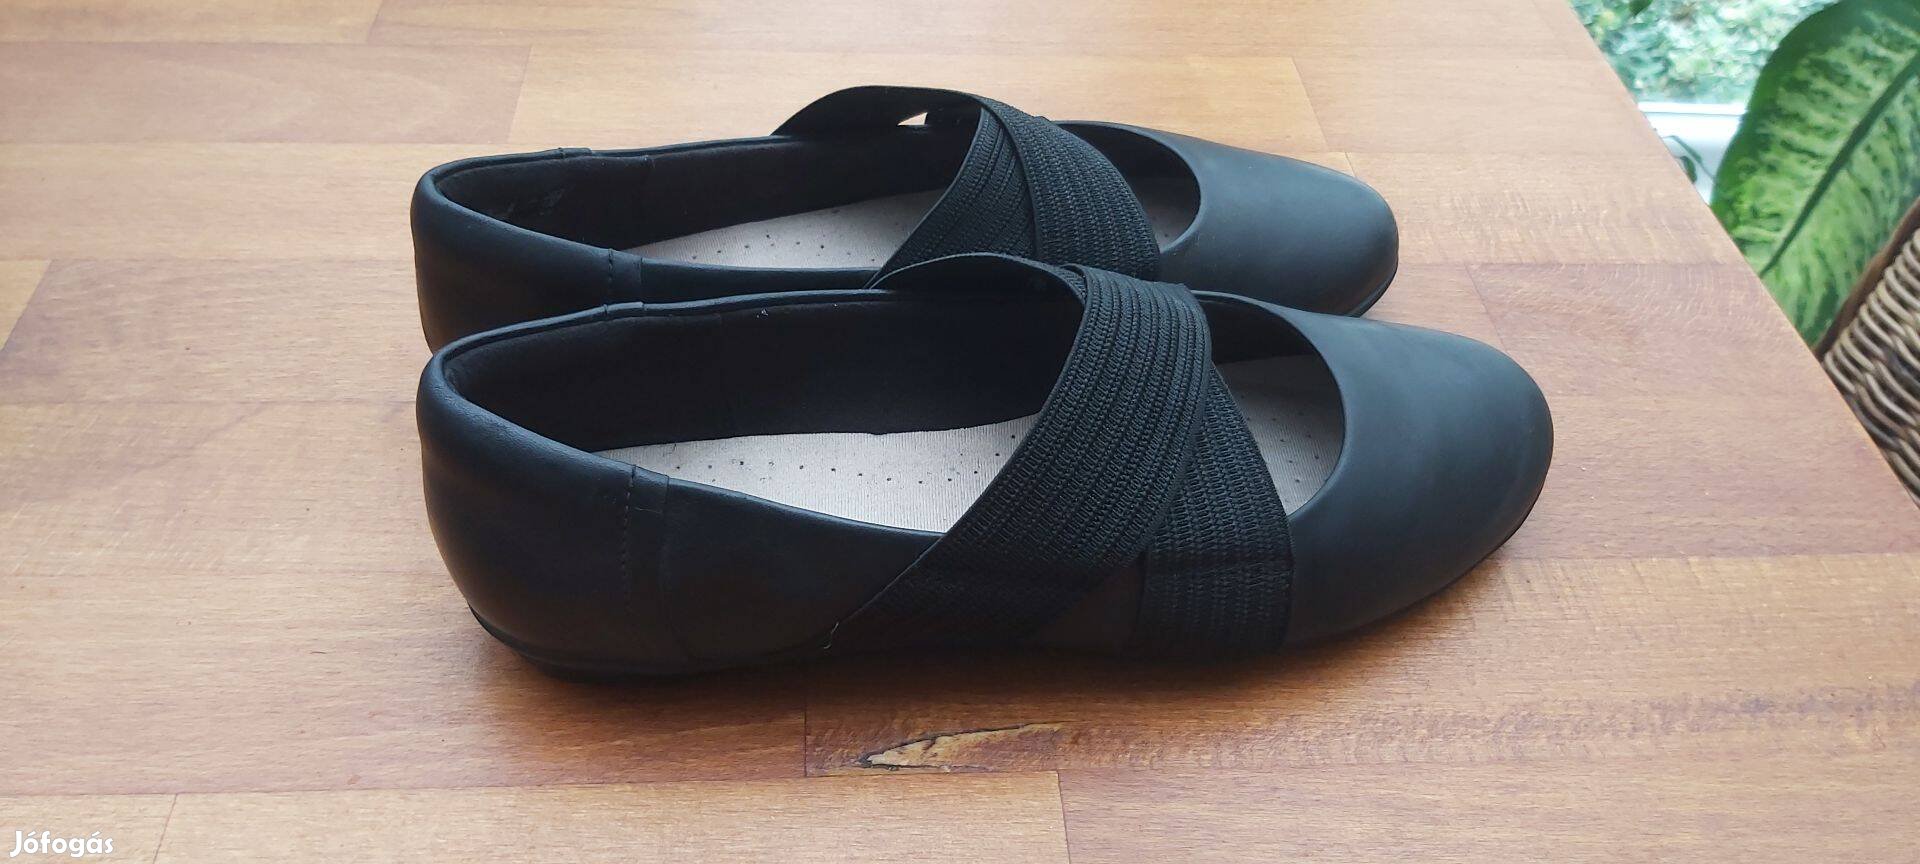 39-es balerina cipő, megkímélt állapotban, fekete